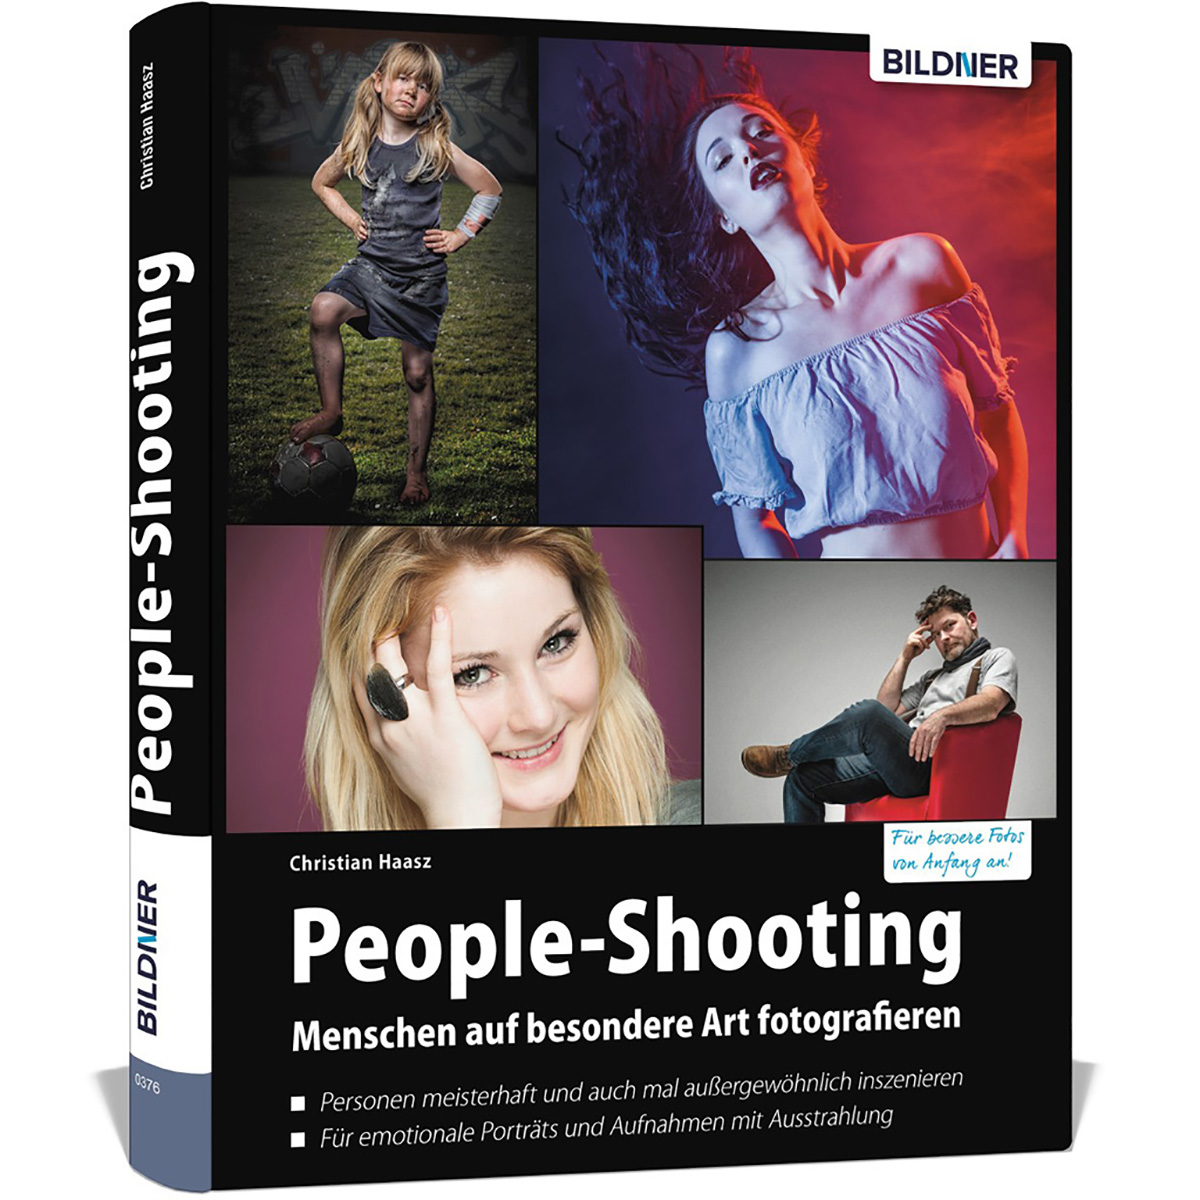 People-Shooting auf Menschen Art - besondere fotografieren